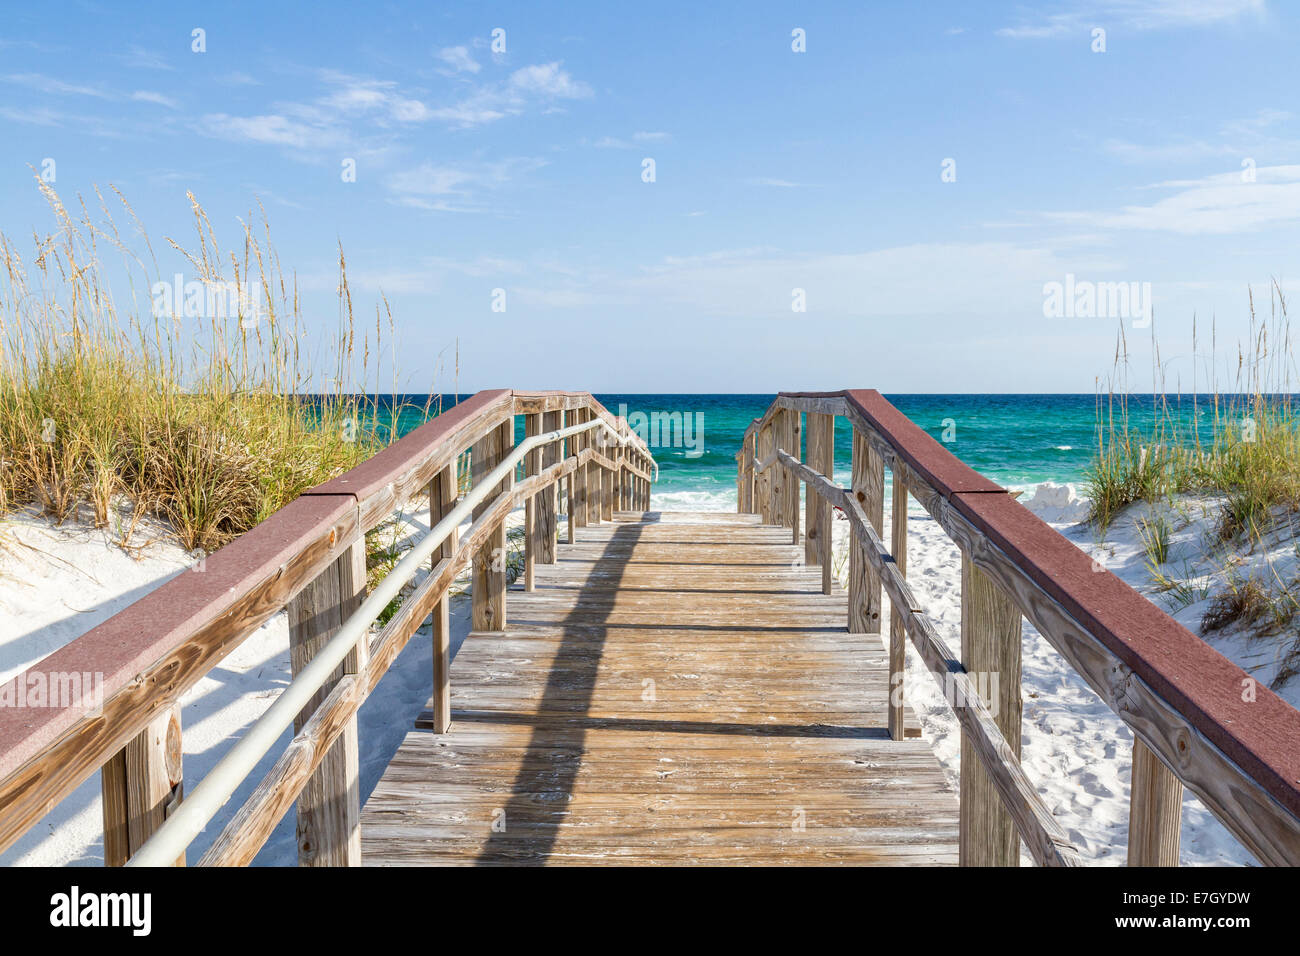 La passerella conduce alle acque turchesi del Golfo del Messico presso il Park West sull'estremità occidentale della spiaggia di Pensacola, Florida. Foto Stock